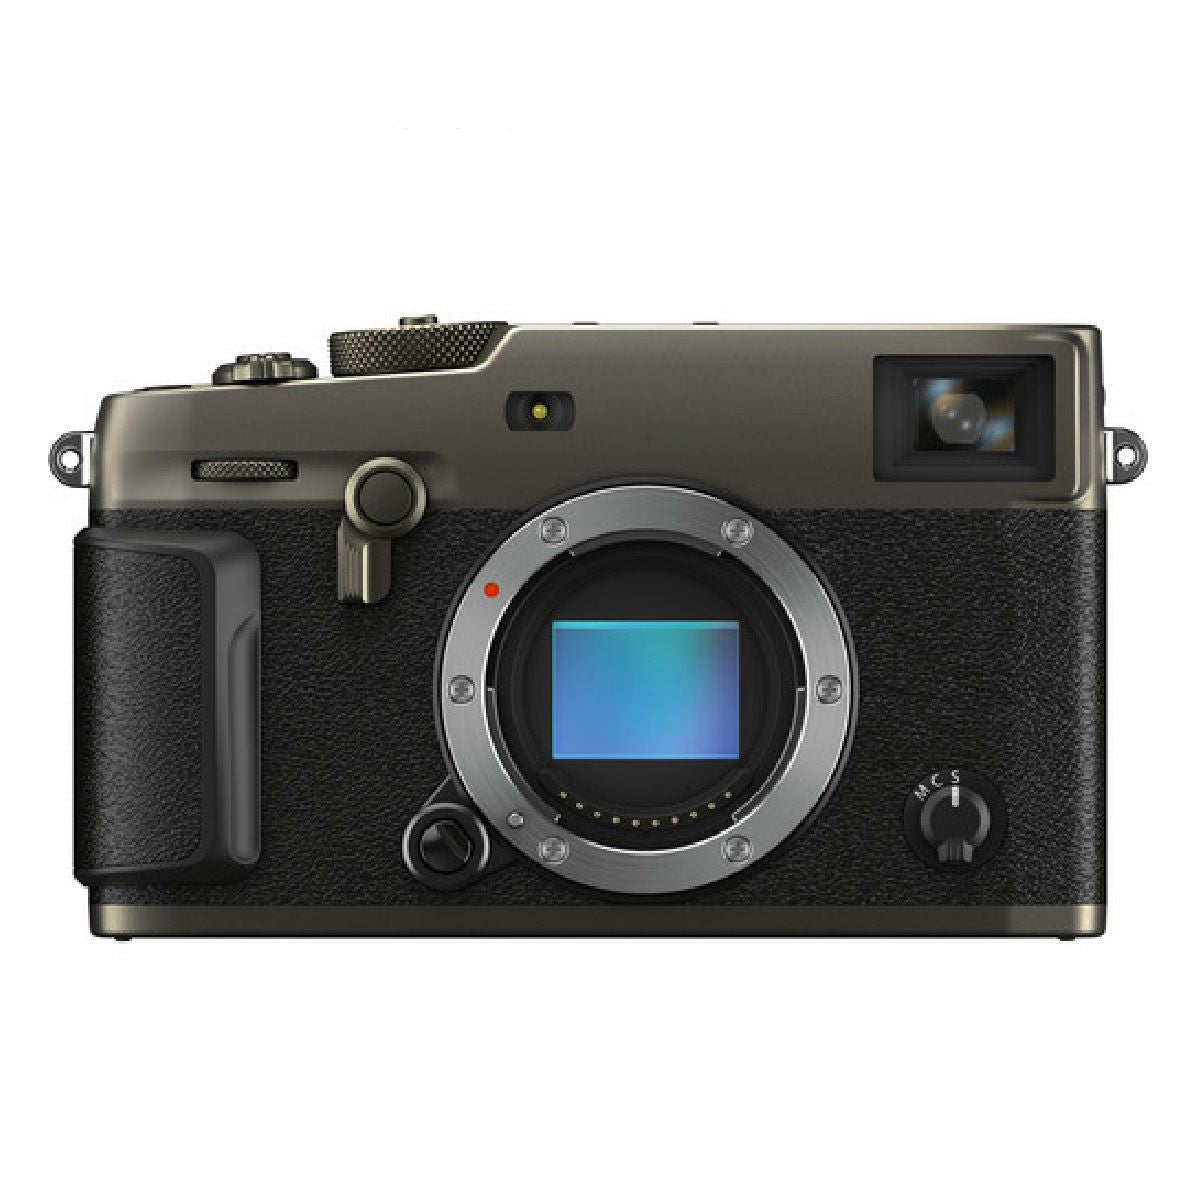 फुजीफिल्म एक्स प्रो3 मिररलेस डिजिटल कैमरा बॉडी केवल ड्यूरा ब्लैक